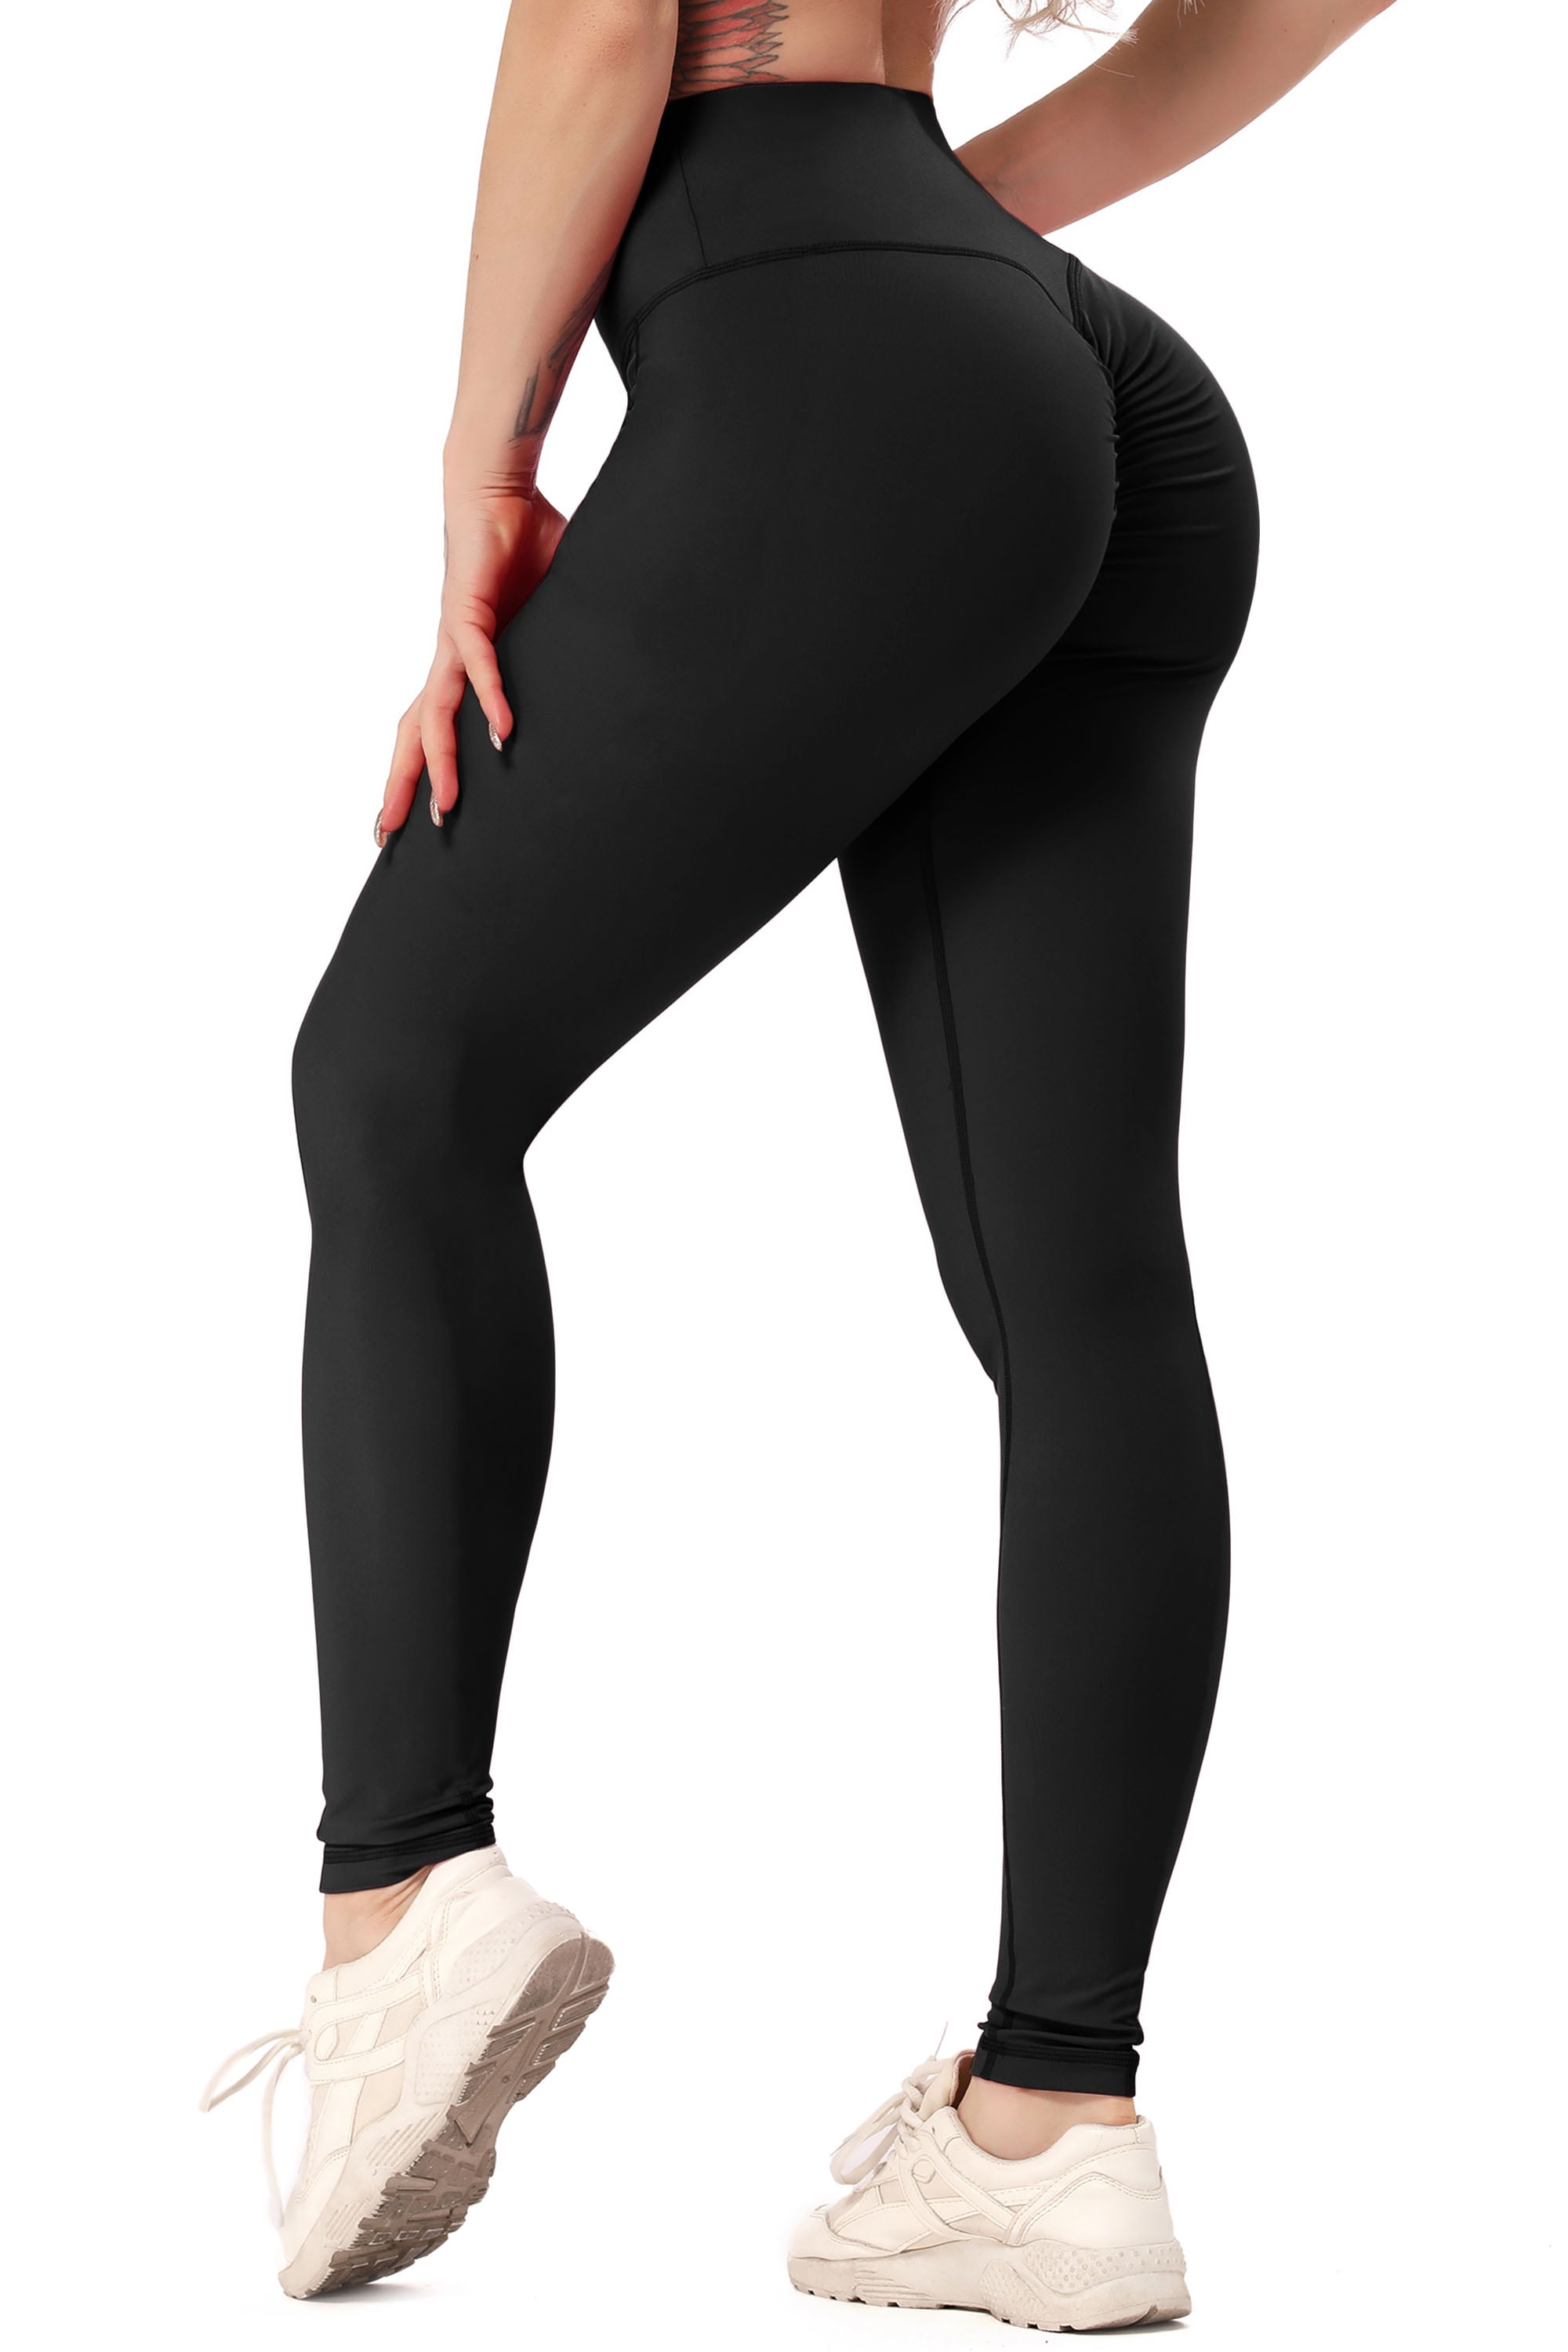 Women Scrunch Butt Lift Pants Yoga Fitness Running Leggings Sports Gym Workout